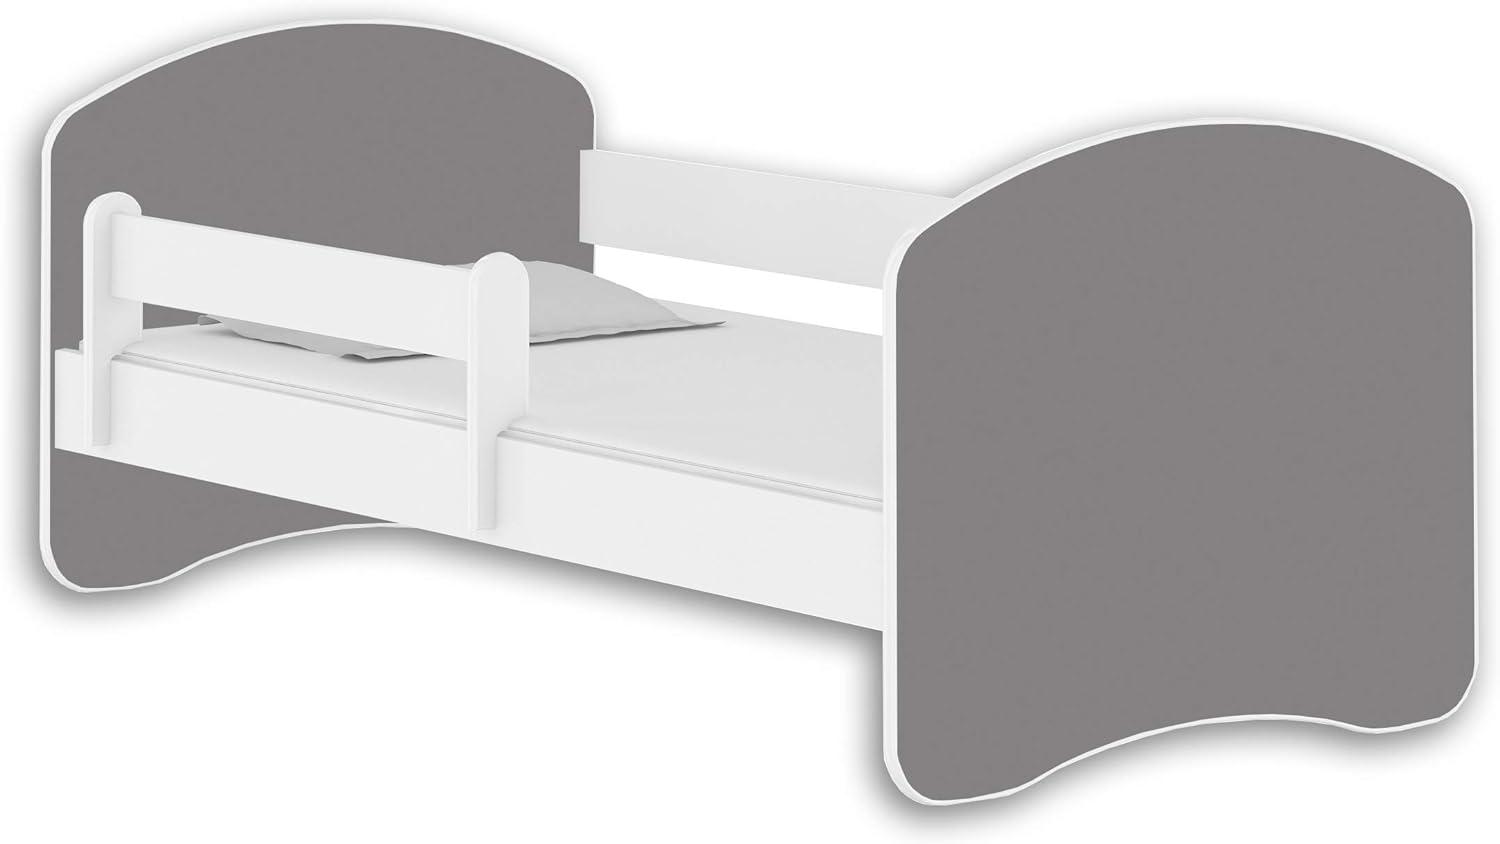 Jugendbett Kinderbett mit einer Schublade mit Rausfallschutz und Matratze Weiß ACMA II 140 160 180 (180x80 cm, Weiß - Grau) Bild 1